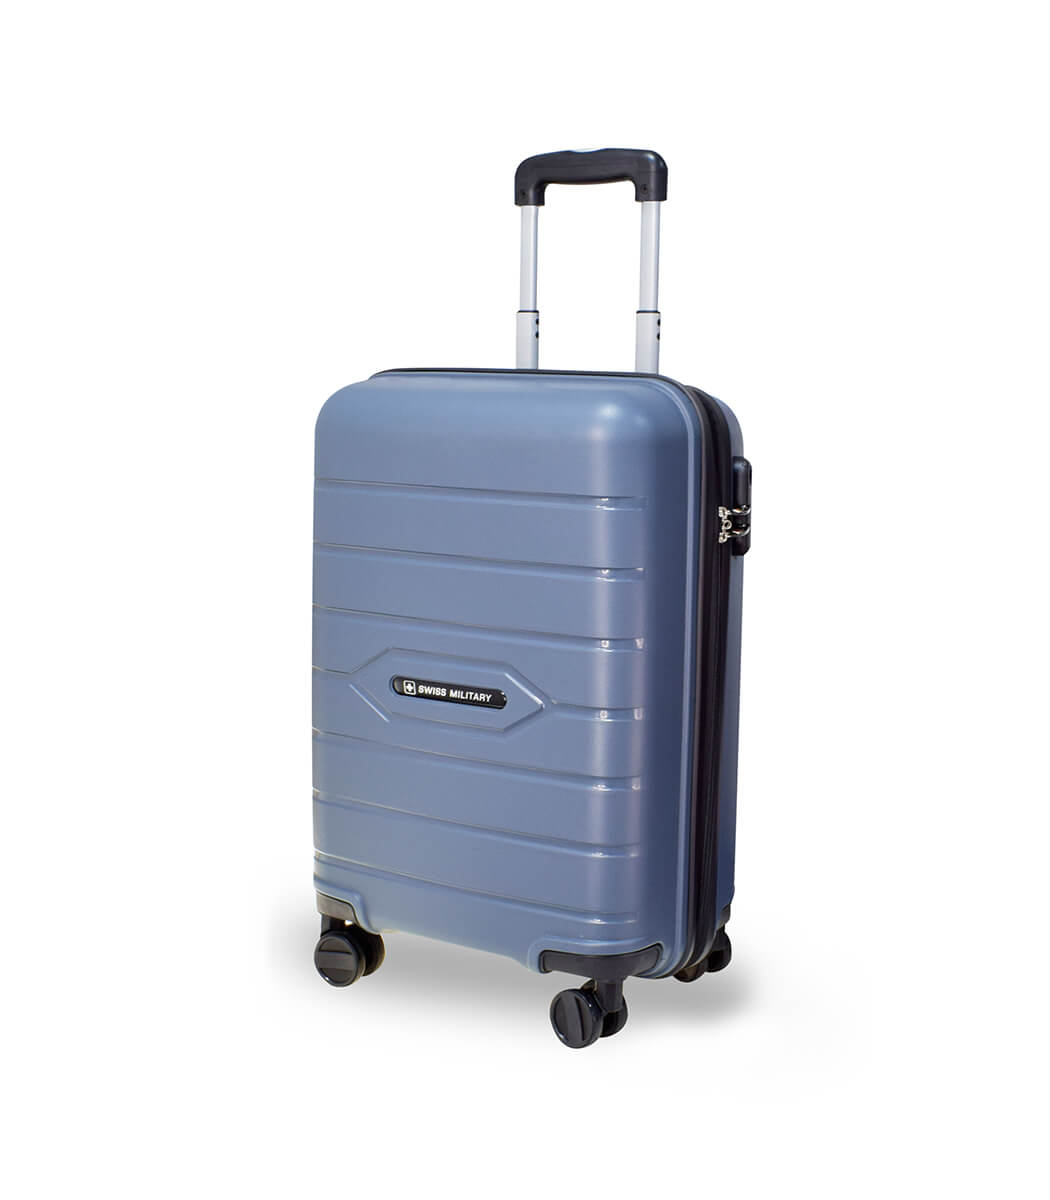 HTL99 - Hard-Top 20inch Trolley Luggage